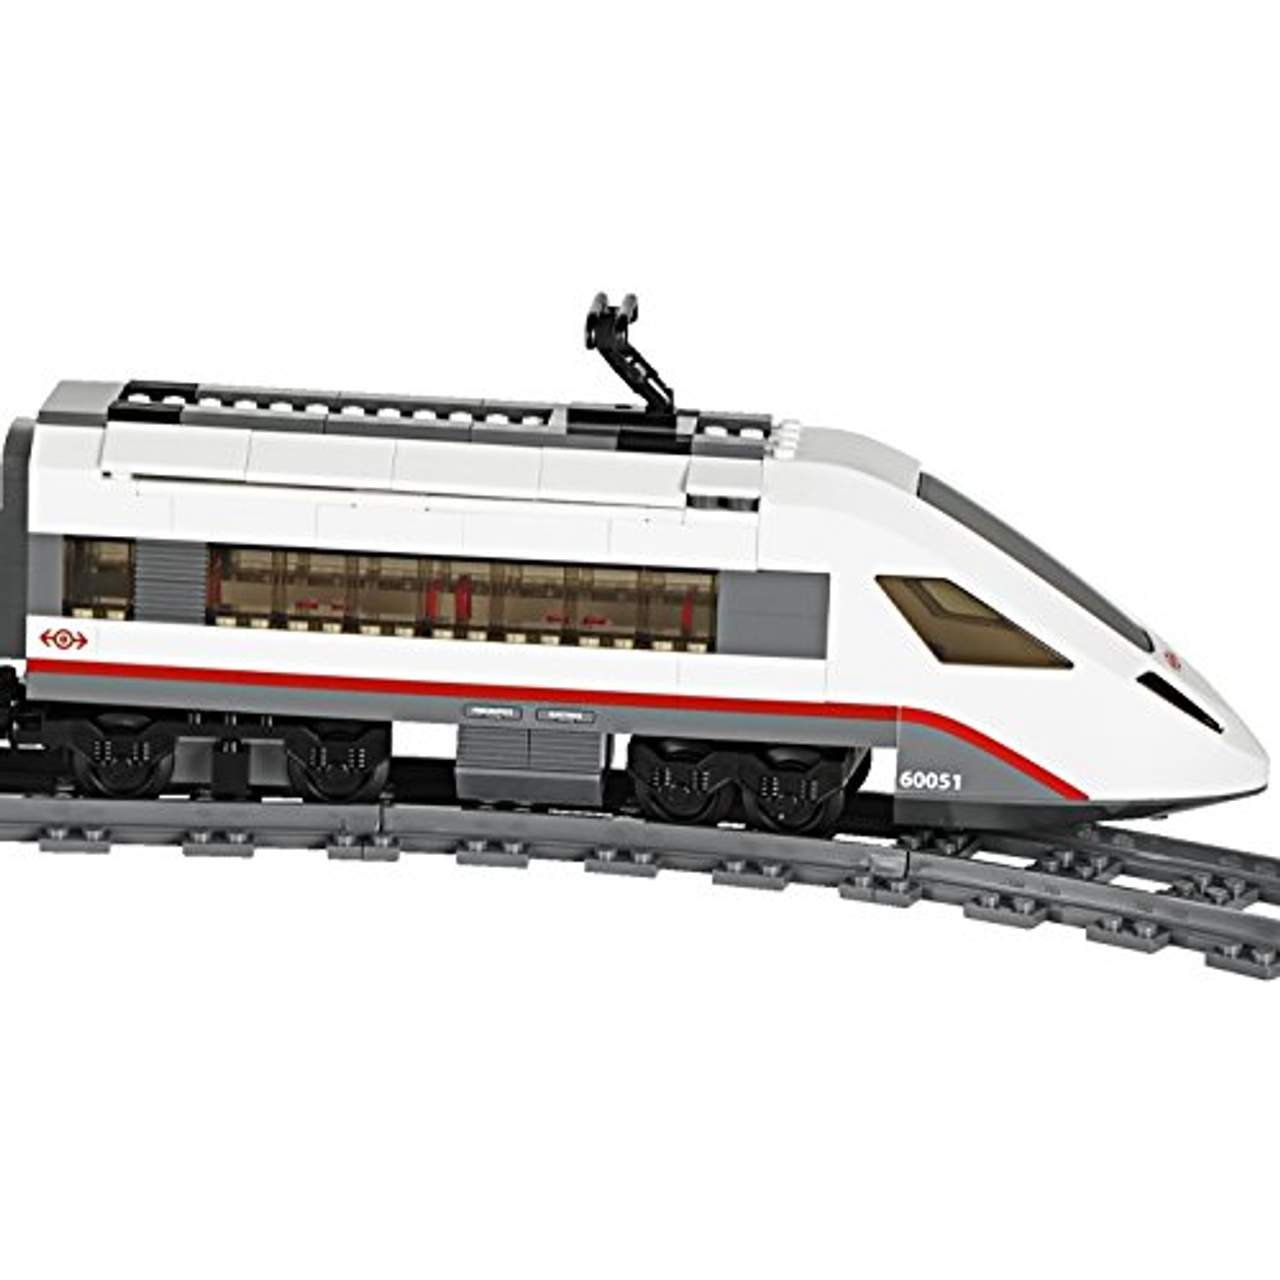 LEGO City 60051 Hochgeschwindigkeitszug